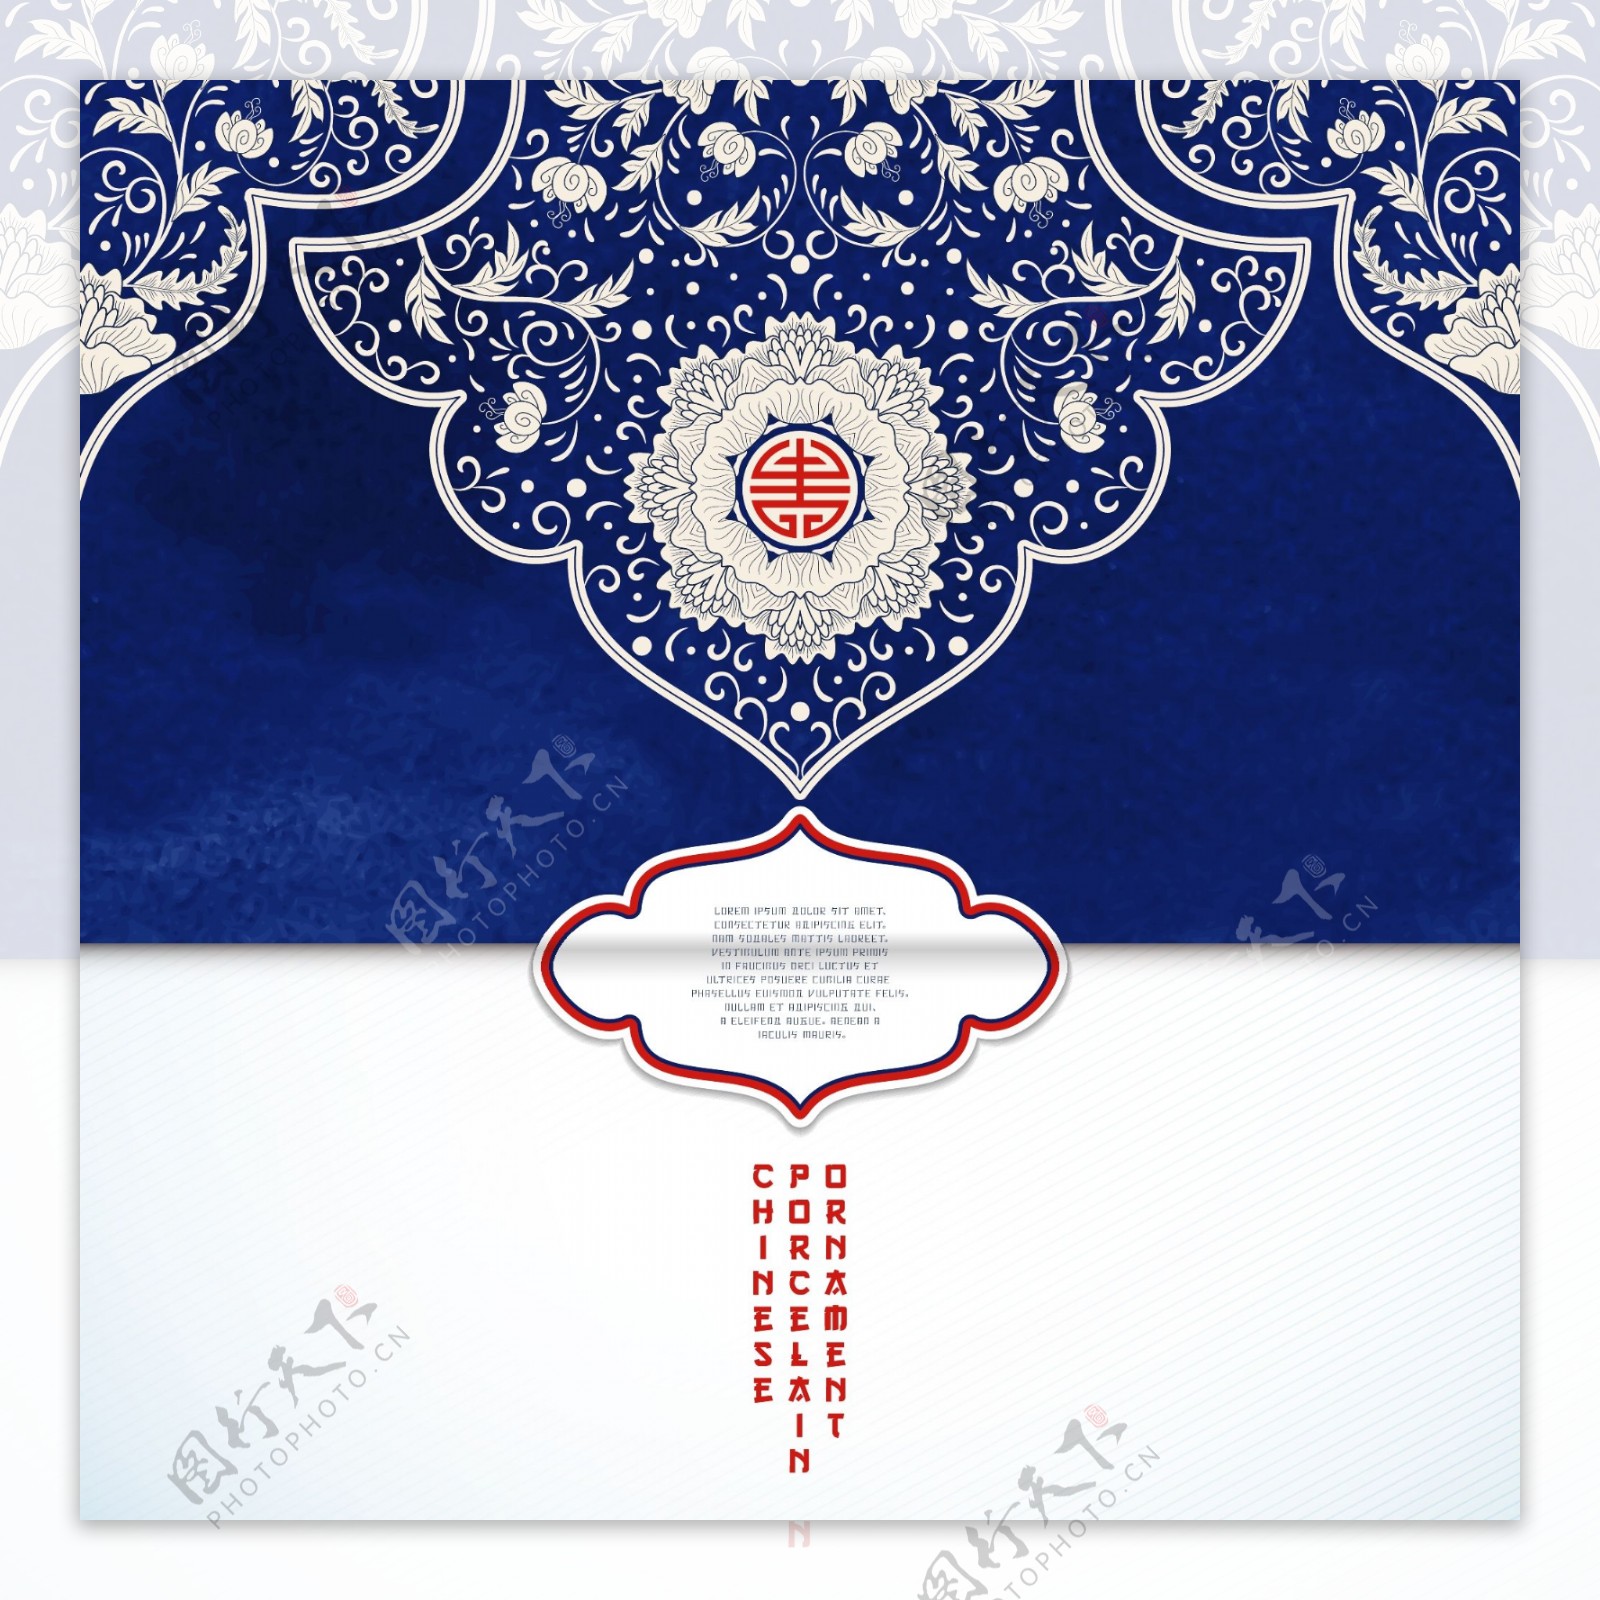 中国传统花纹贺卡设计矢量素材